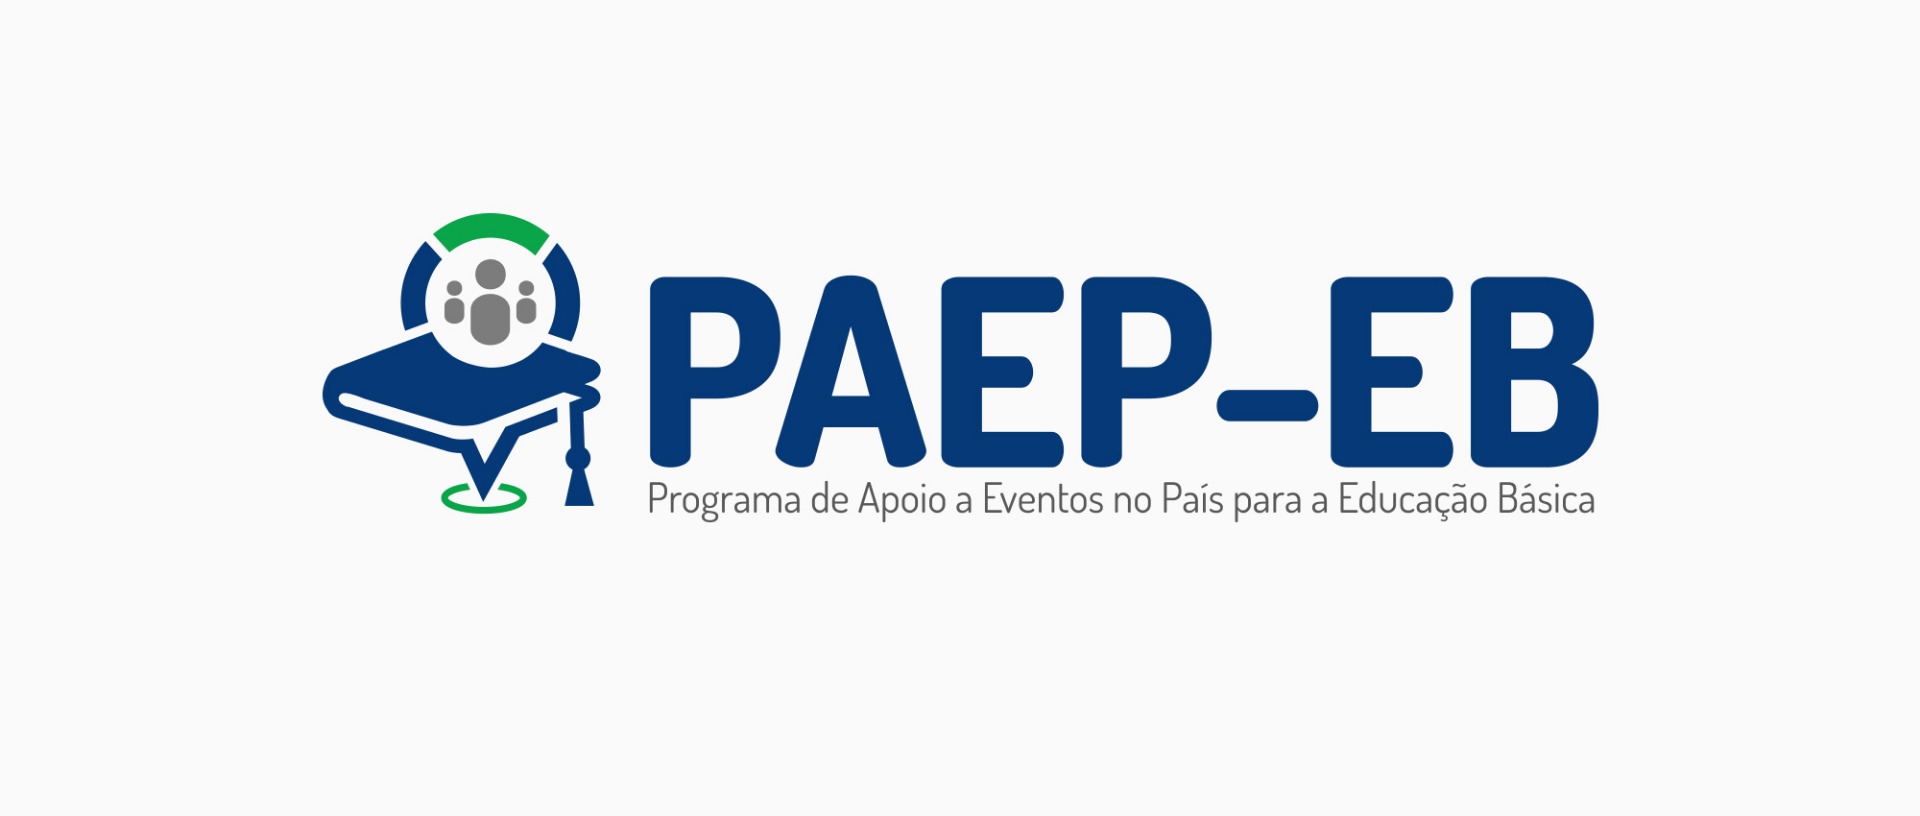 CAPES lança programa inédito para apoio a eventos
